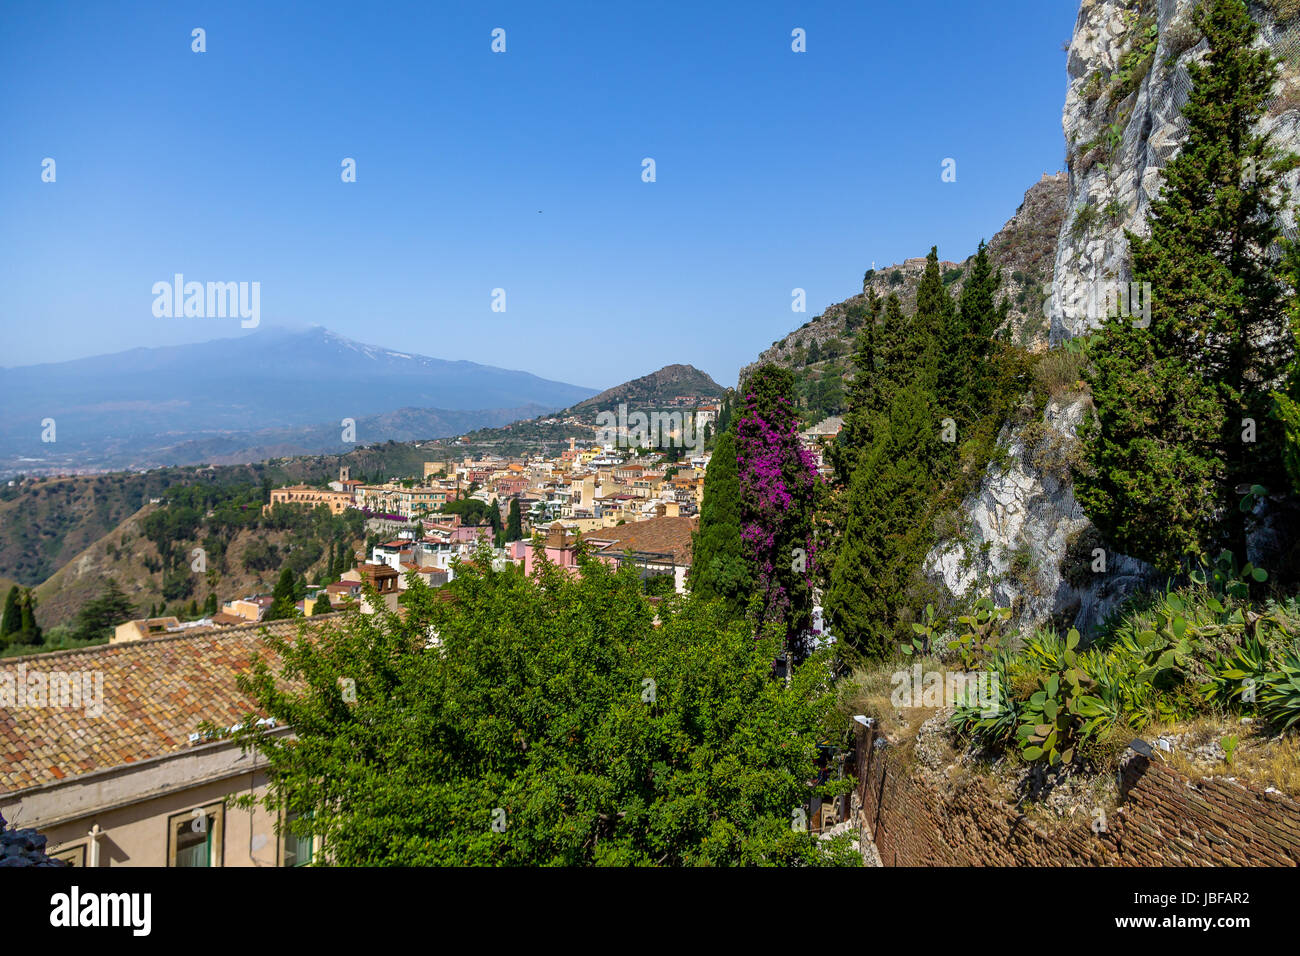 Aerial view of Taormina city and Mount Etna Volcano - Taormina, Sicily, Italy Stock Photo